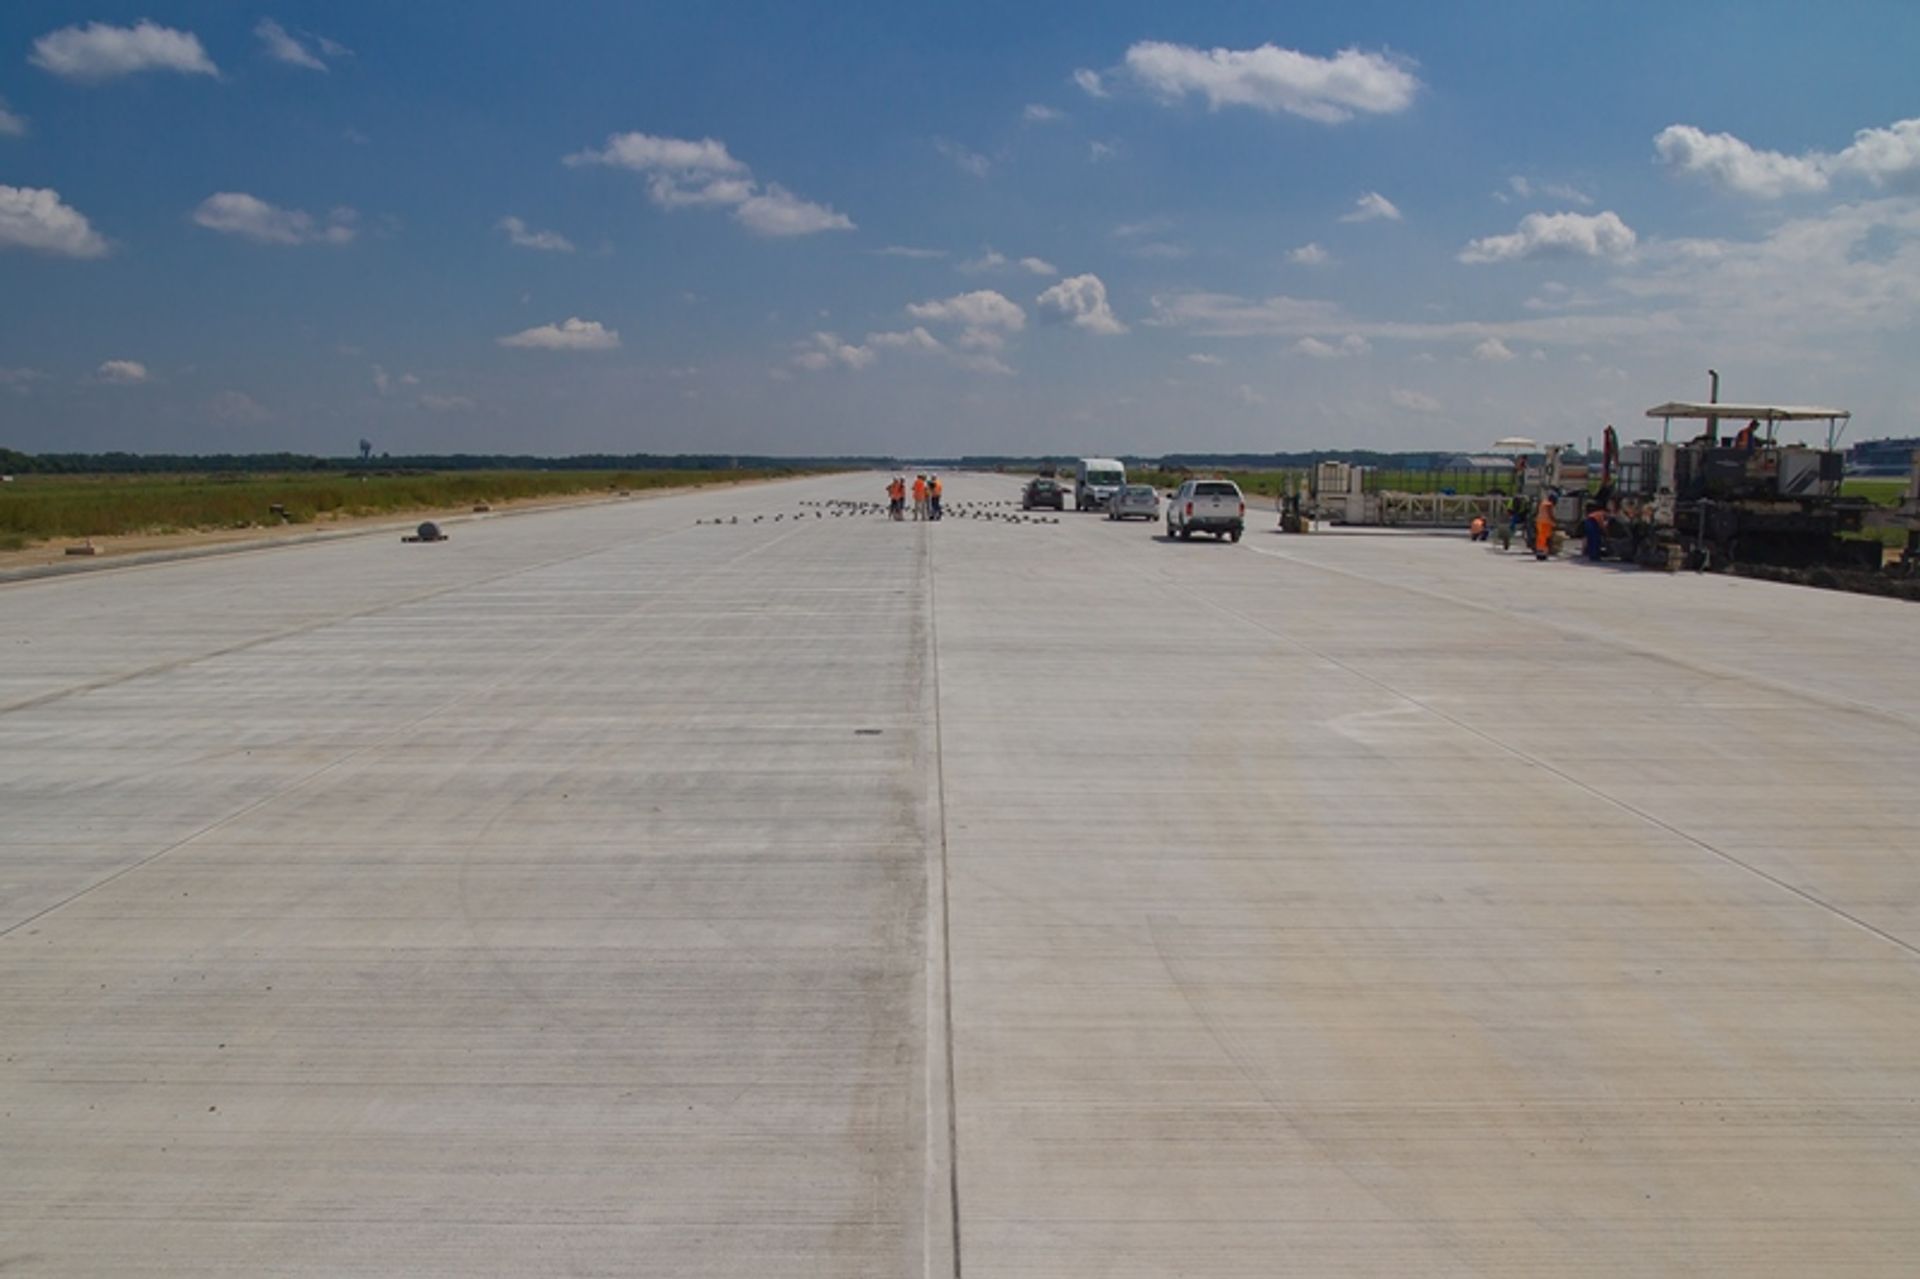  Finalizacja prac przy układaniu nawierzchni nowej drogi startowej w Katowice Airport